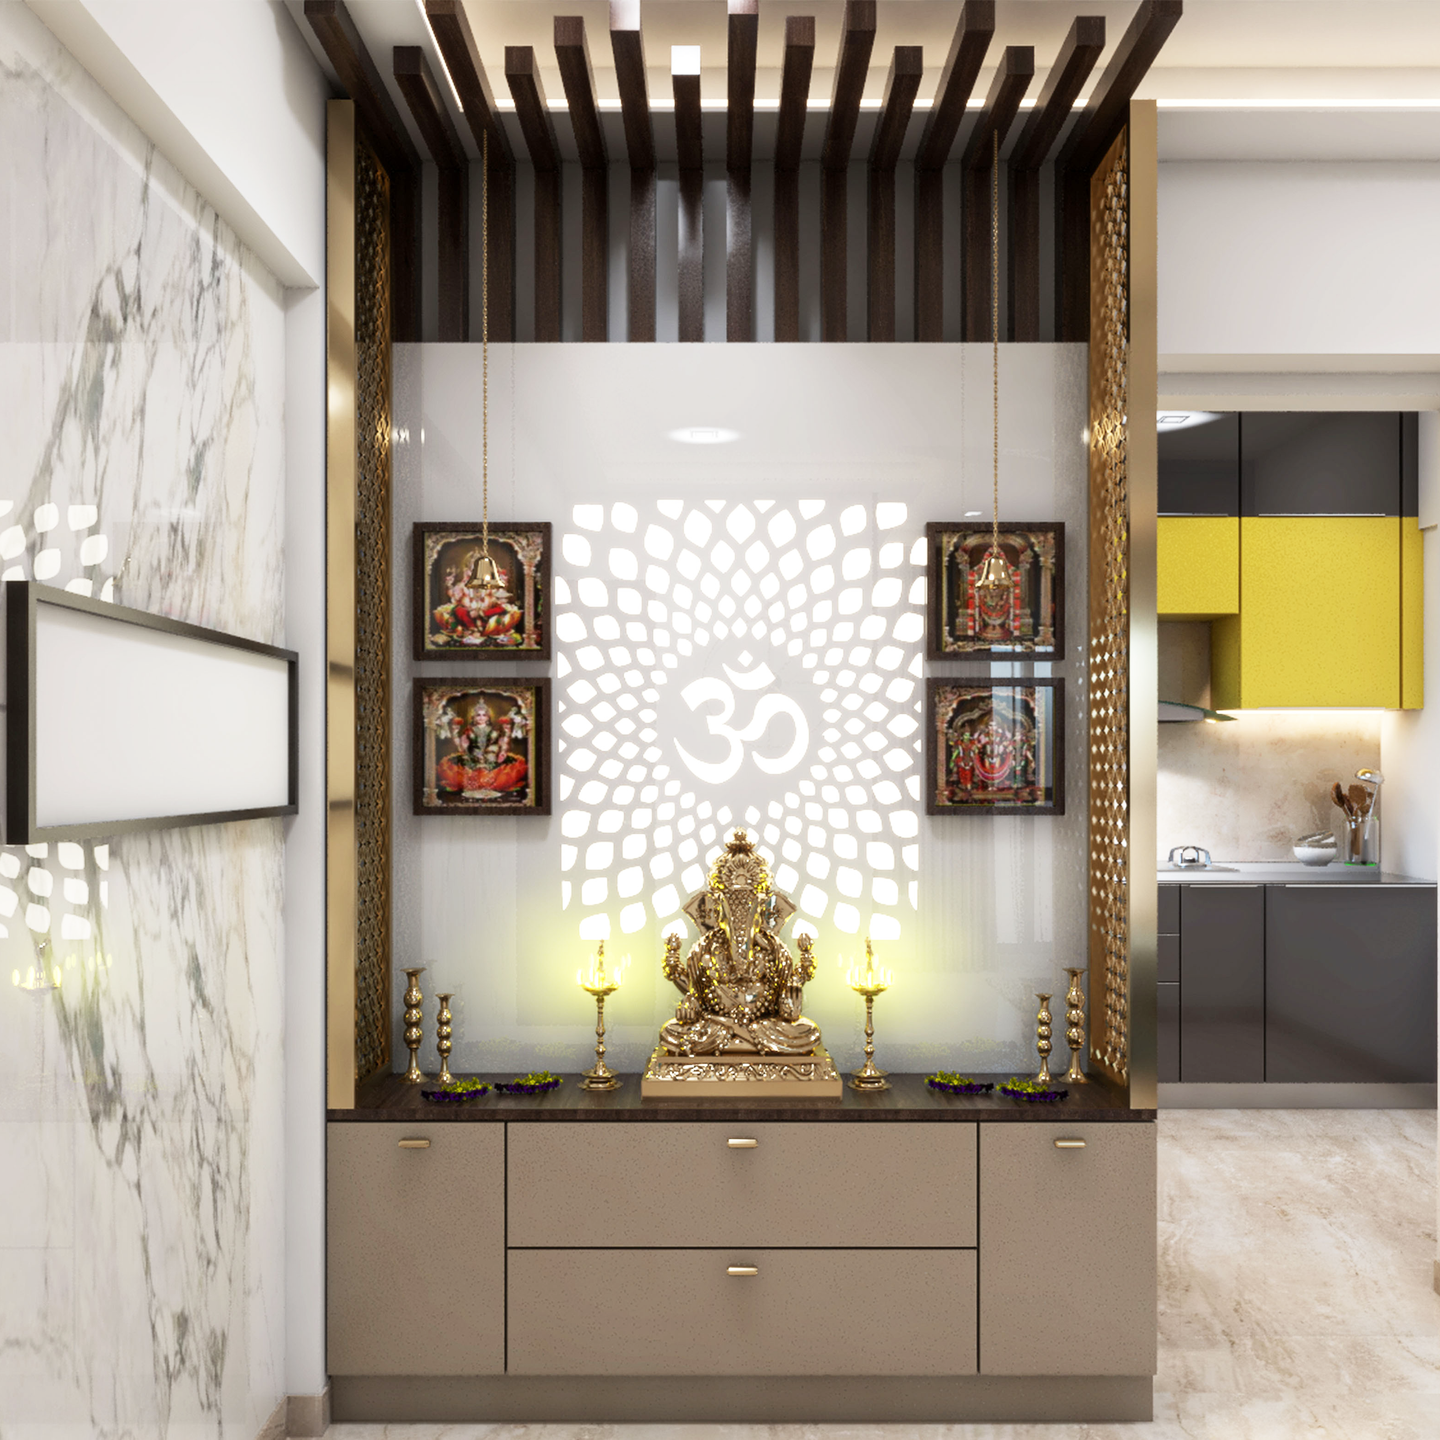 Contemporary Mandir Design For Home - Livspace